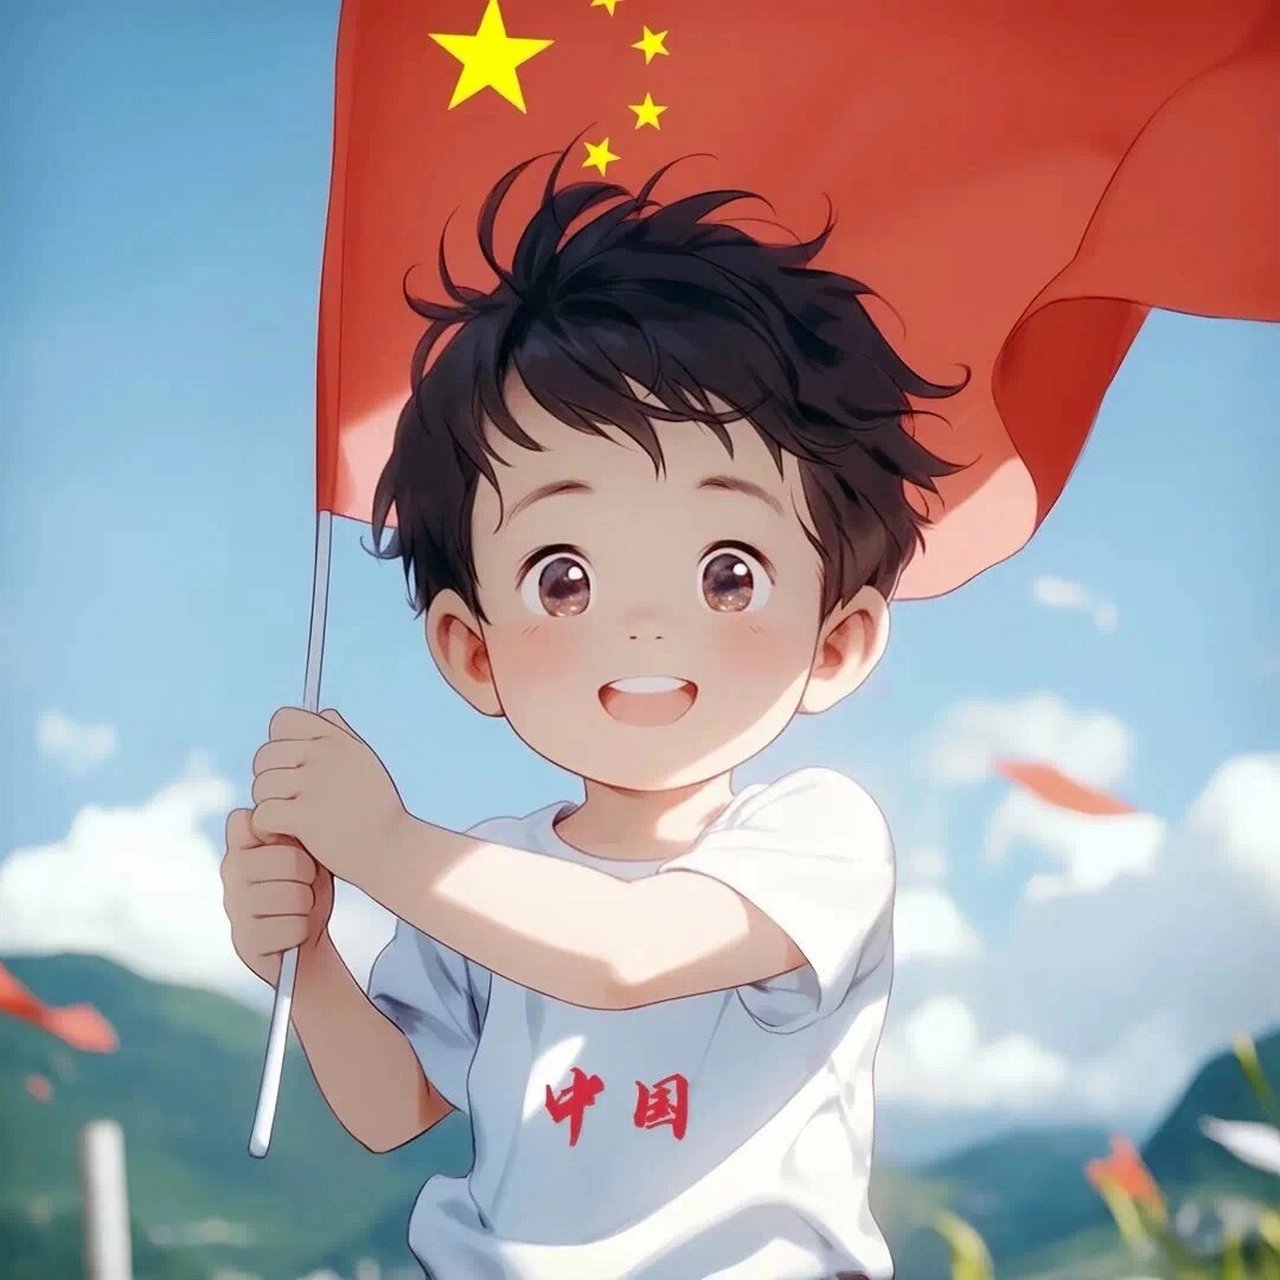 中国男头像红旗图片